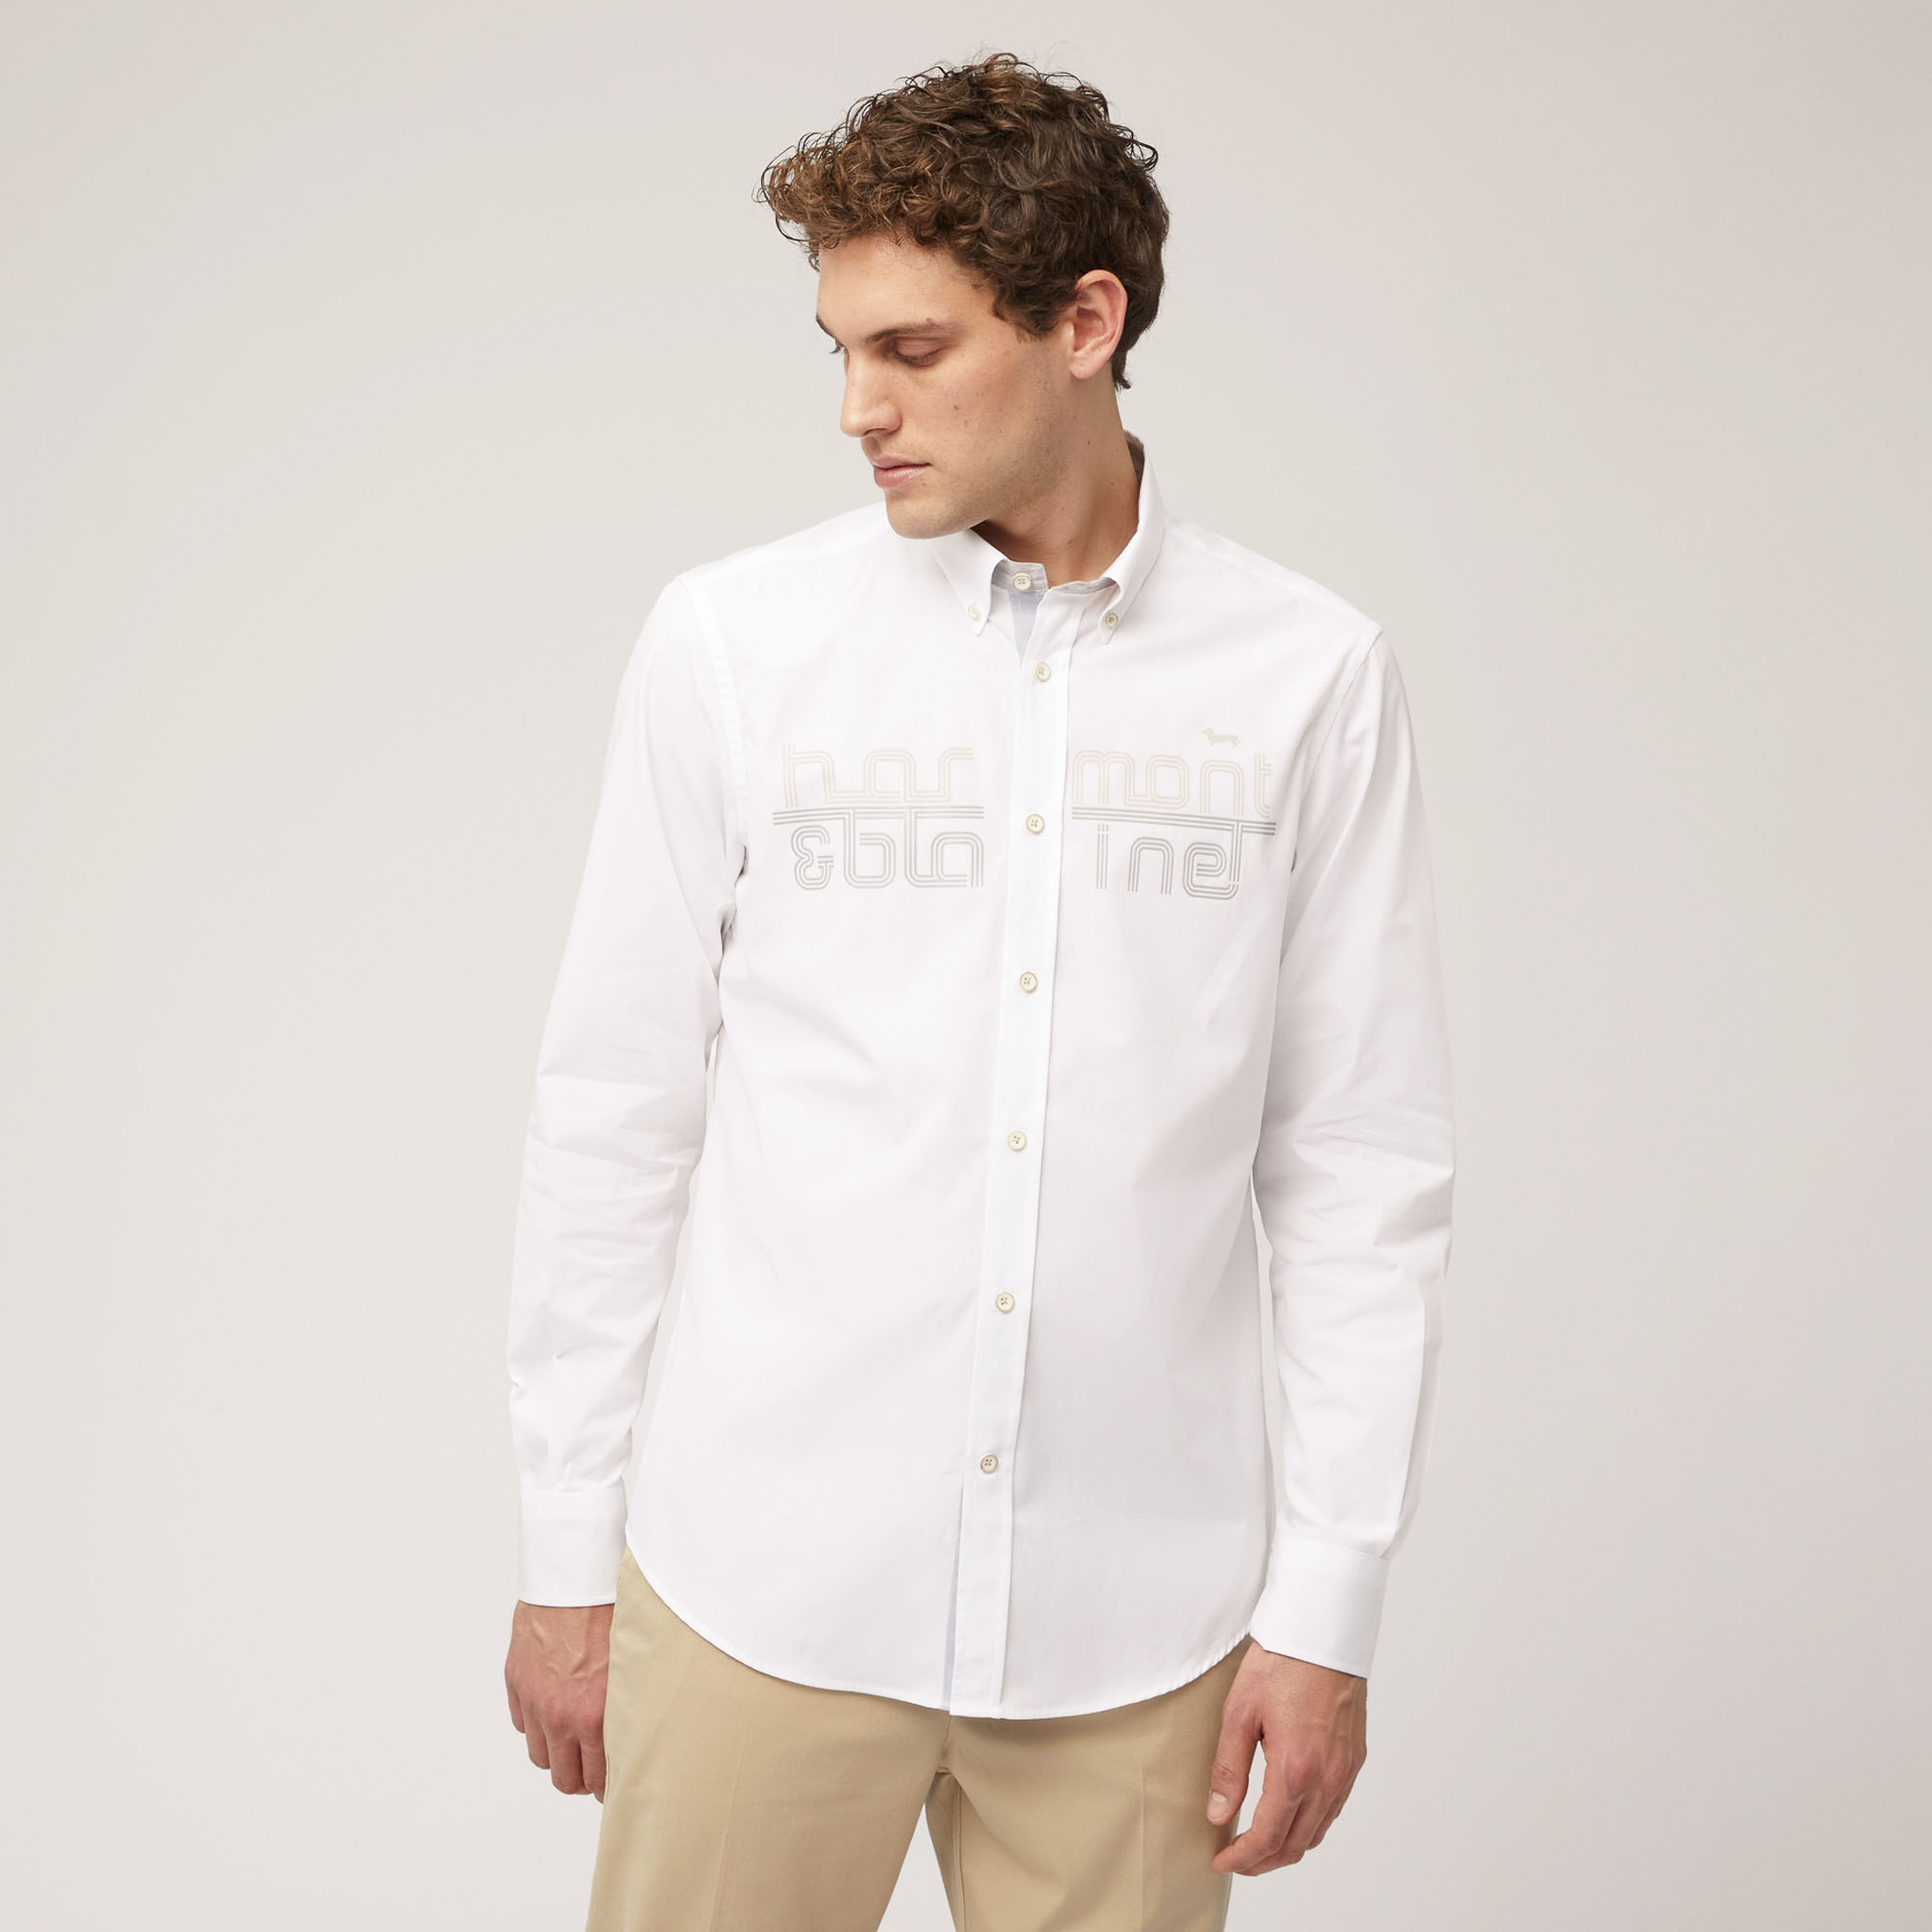 Camisa de algodón con logotipo efecto 3D, Blanco, large